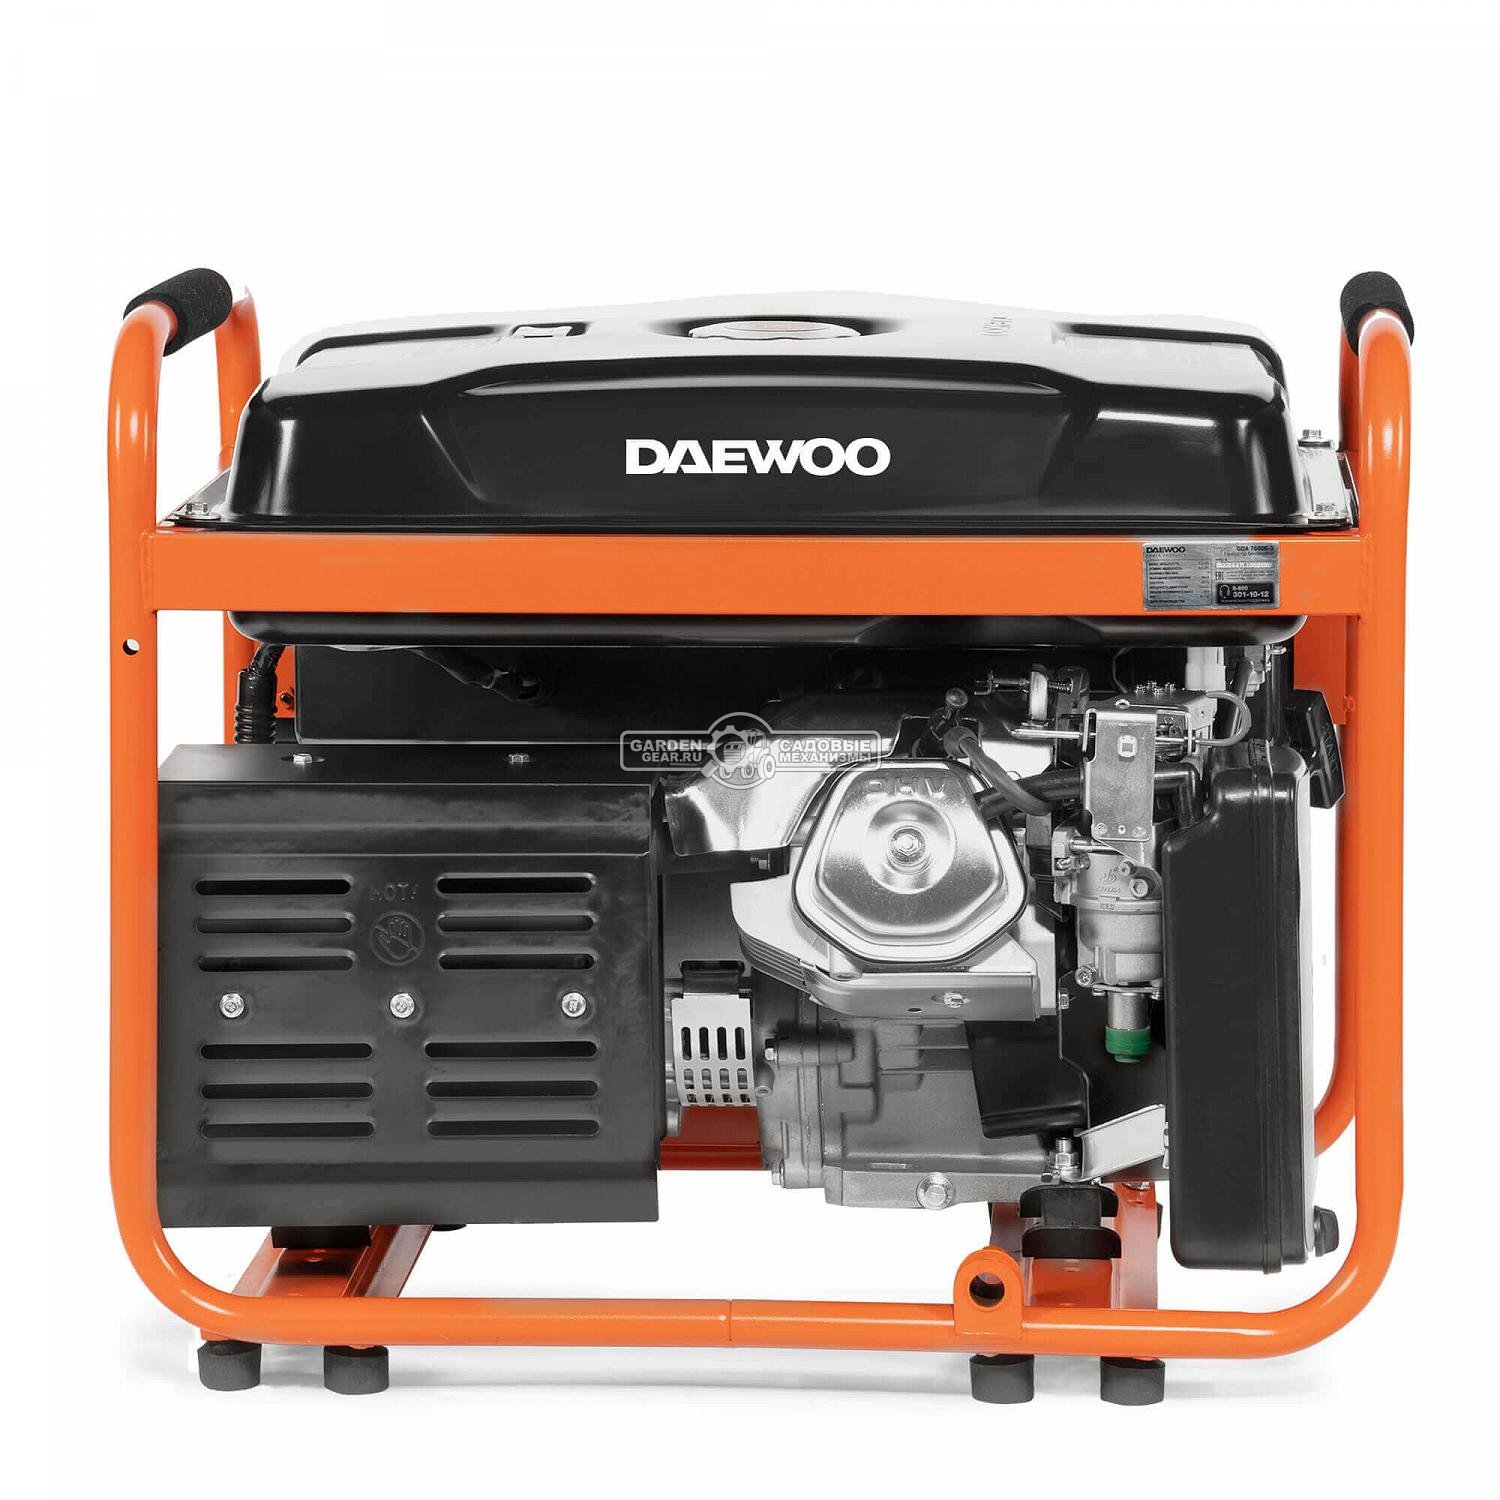 Бензиновый генератор Daewoo GDA 7500E-3 трехфазный (PRC, 420 см3, 6,0/6,5 кВт, электростартер, разъем ATS, 30 л, 81,7 кг.)